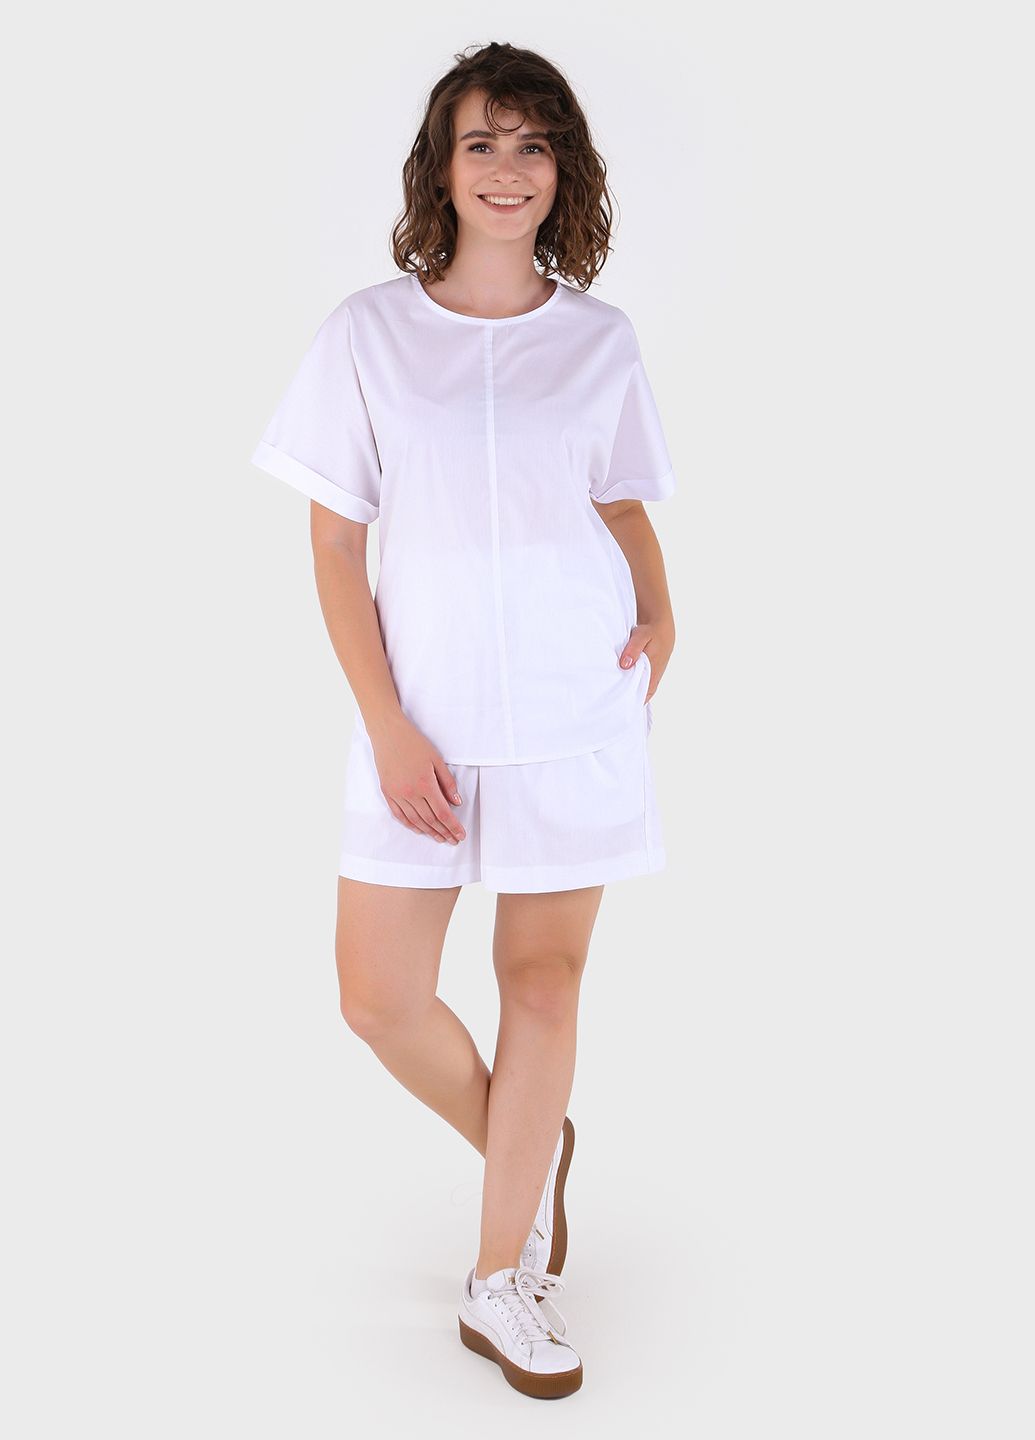 Купить Хлопковые шорты женские бермуды белого цвета Merlini Перуджа 300000051, размер 42-44 в интернет-магазине